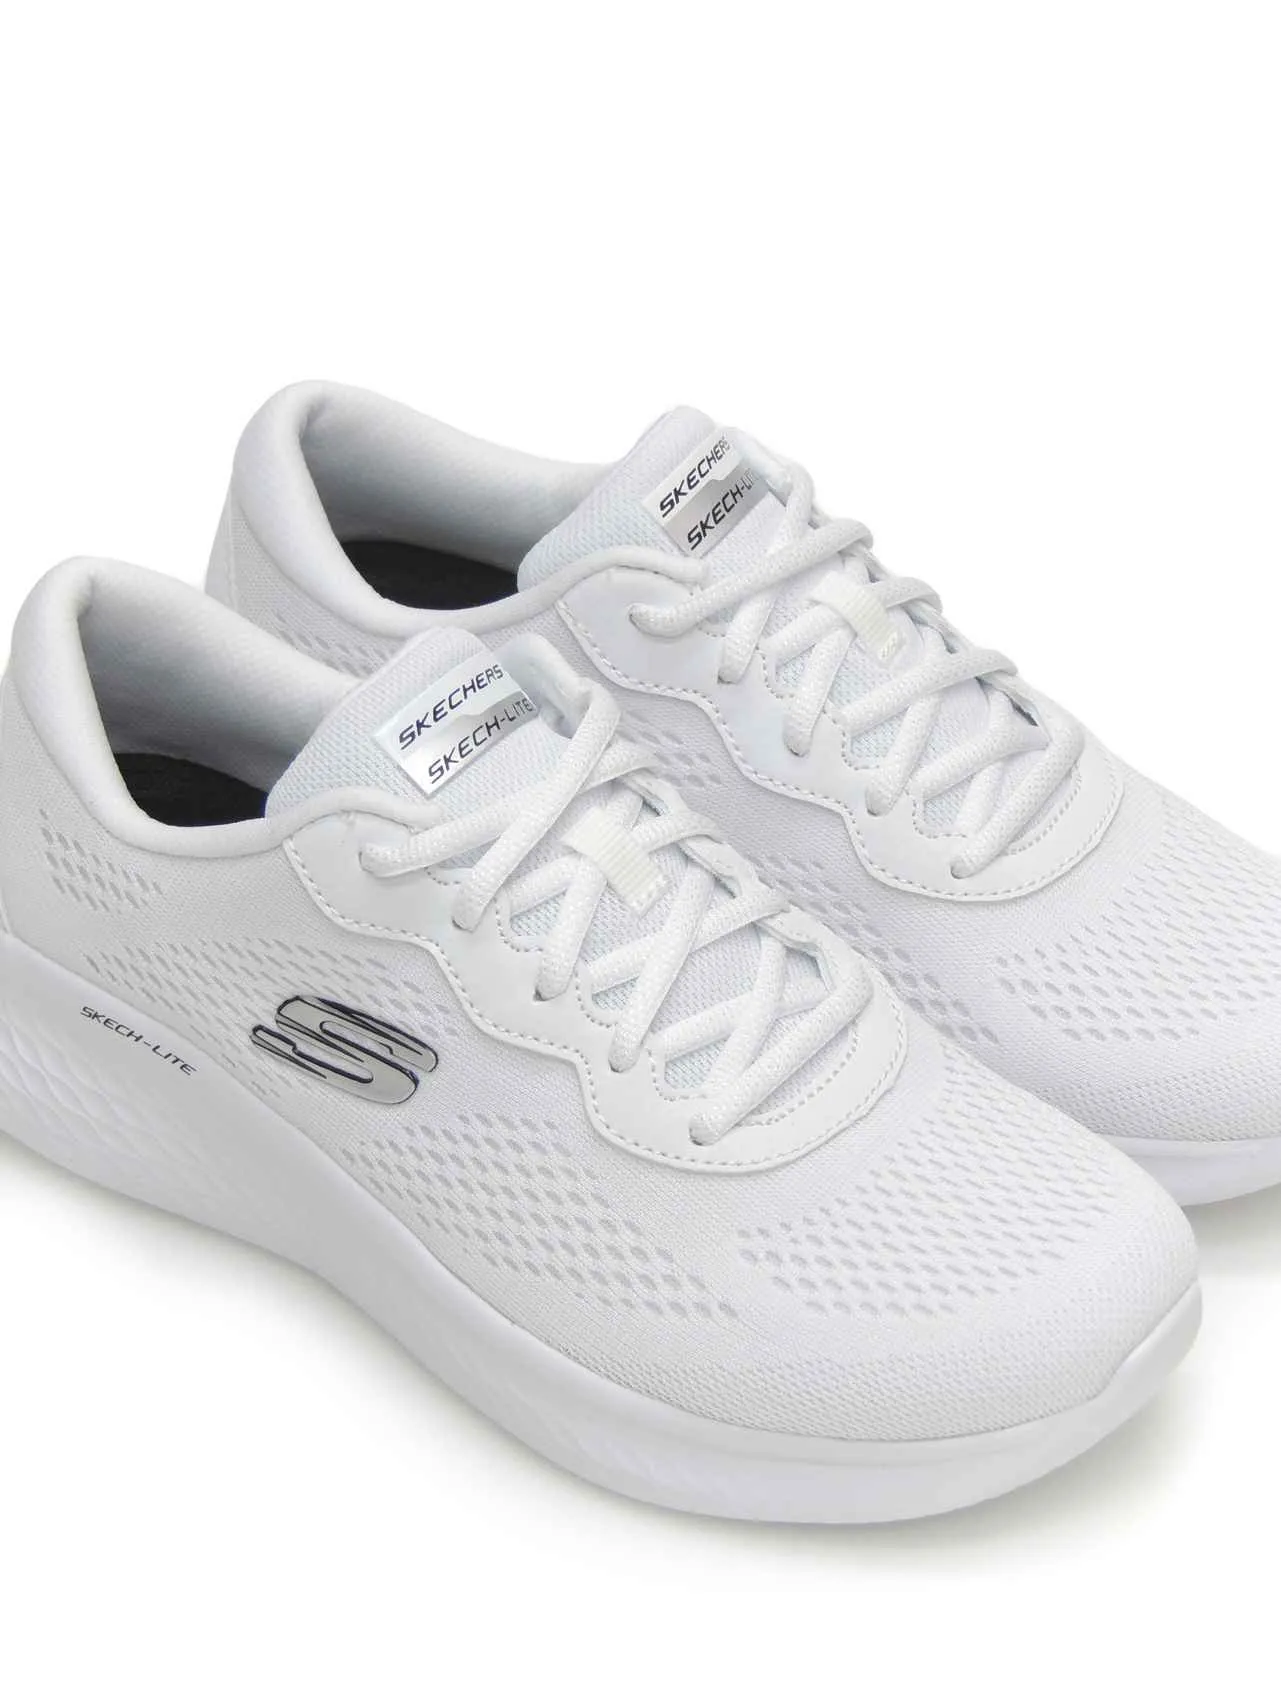 sneakers--skechers-149991-textil-blanco